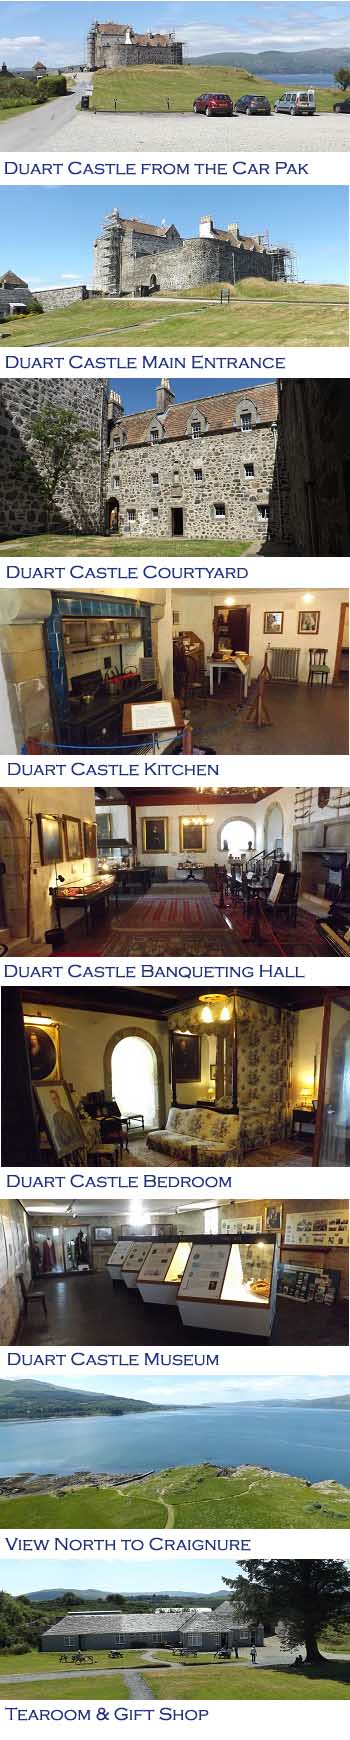 Duart Castle Photos